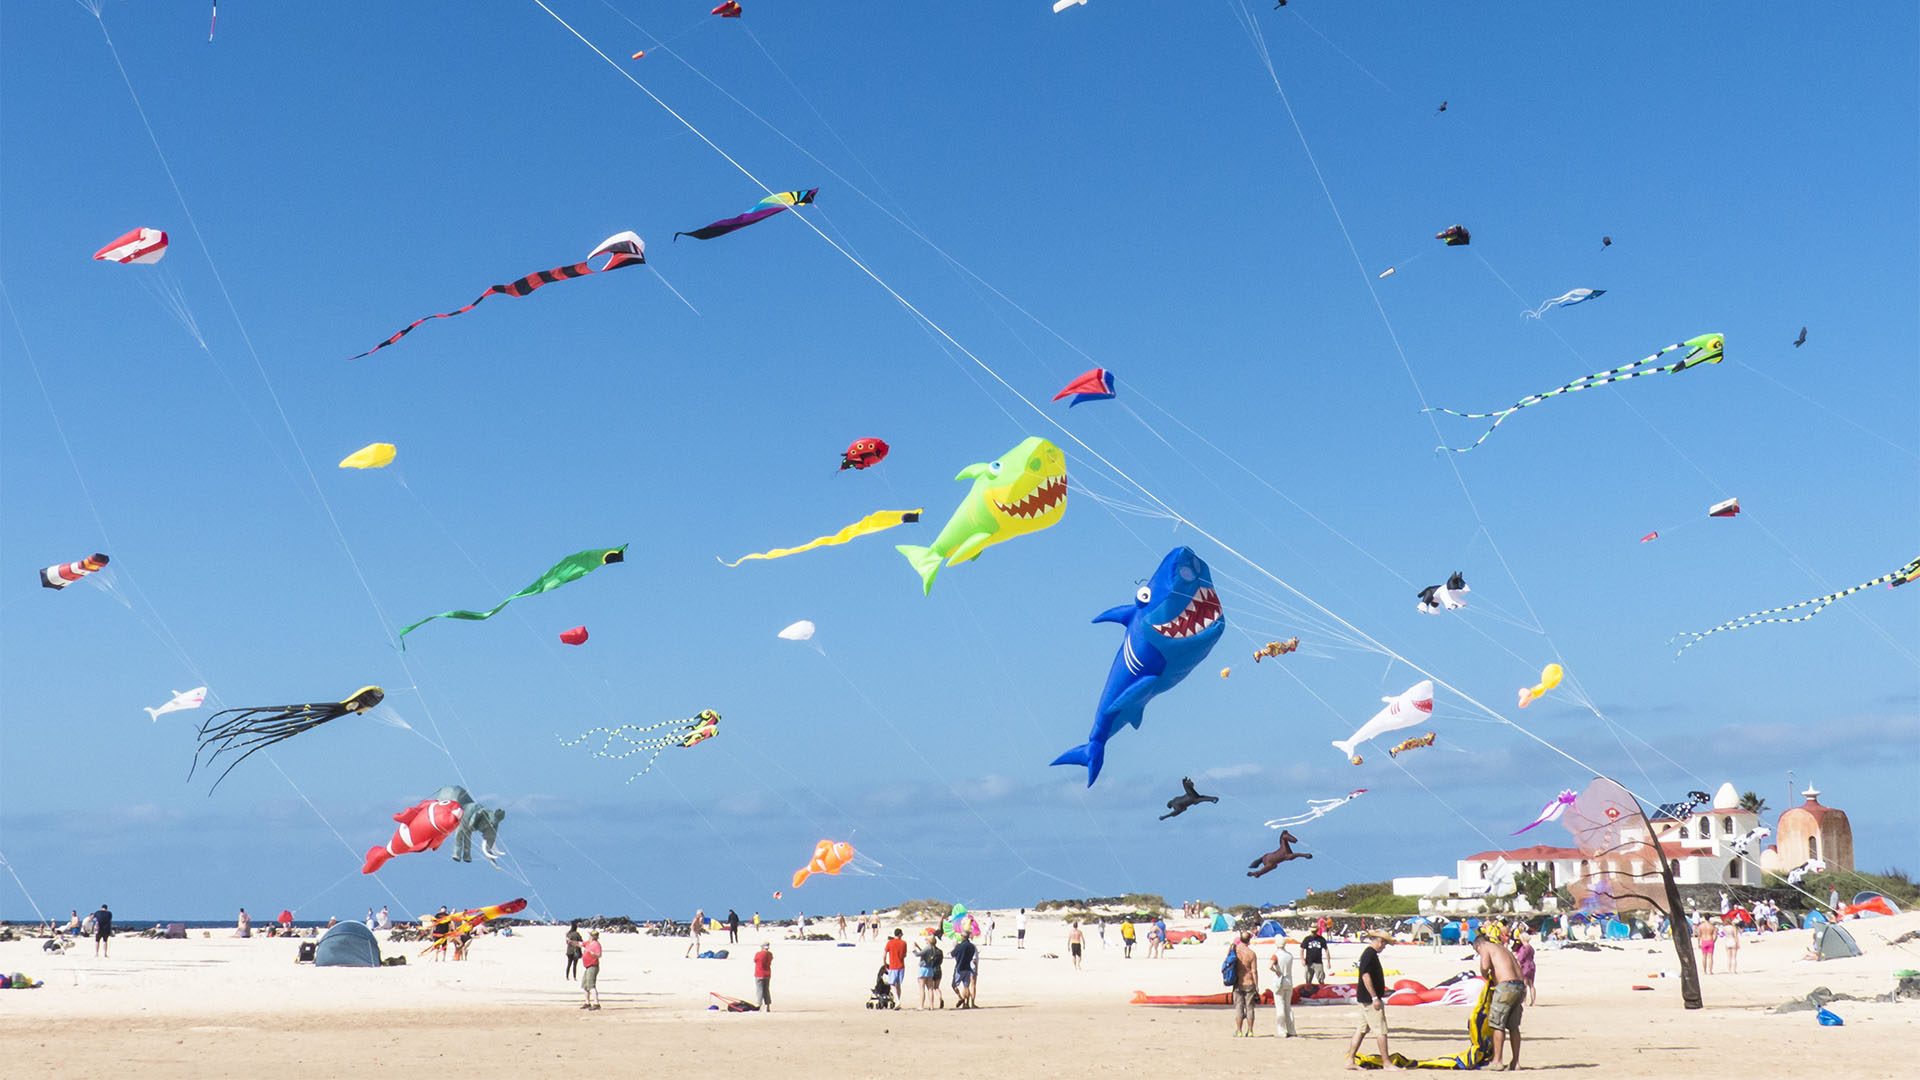 Kunst Kulturveranstaltungen Fuerteventura: Internationales Kite Festival Fuerteventura.